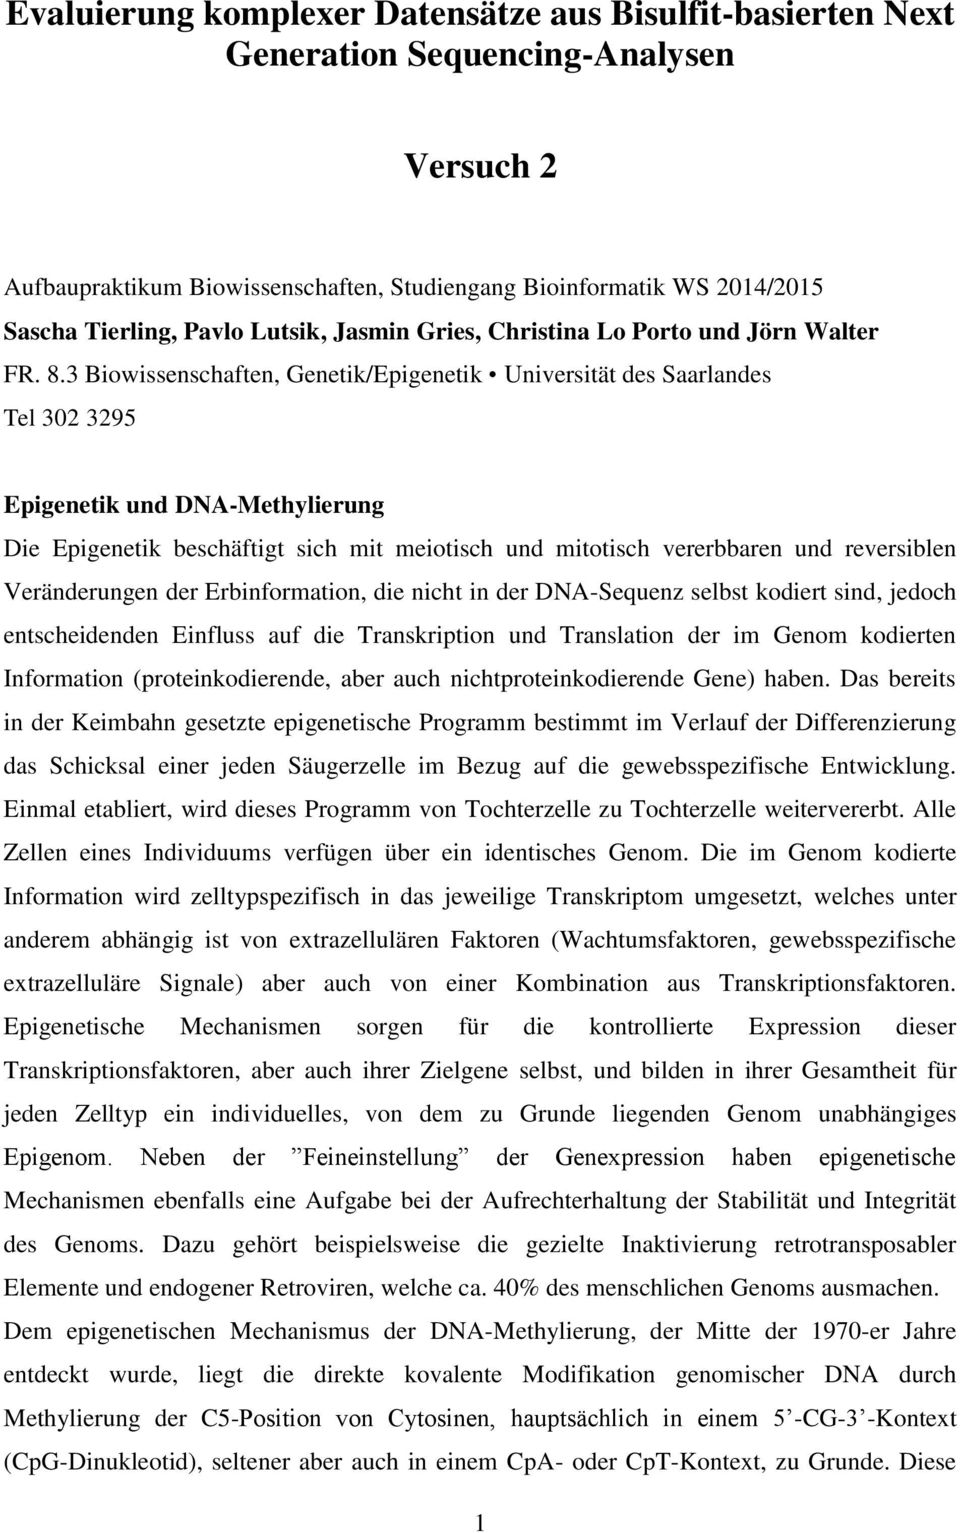 3 Biowissenschaften, Genetik/Epigenetik Universität des Saarlandes Tel 302 3295 Epigenetik und DNA-Methylierung Die Epigenetik beschäftigt sich mit meiotisch und mitotisch vererbbaren und reversiblen